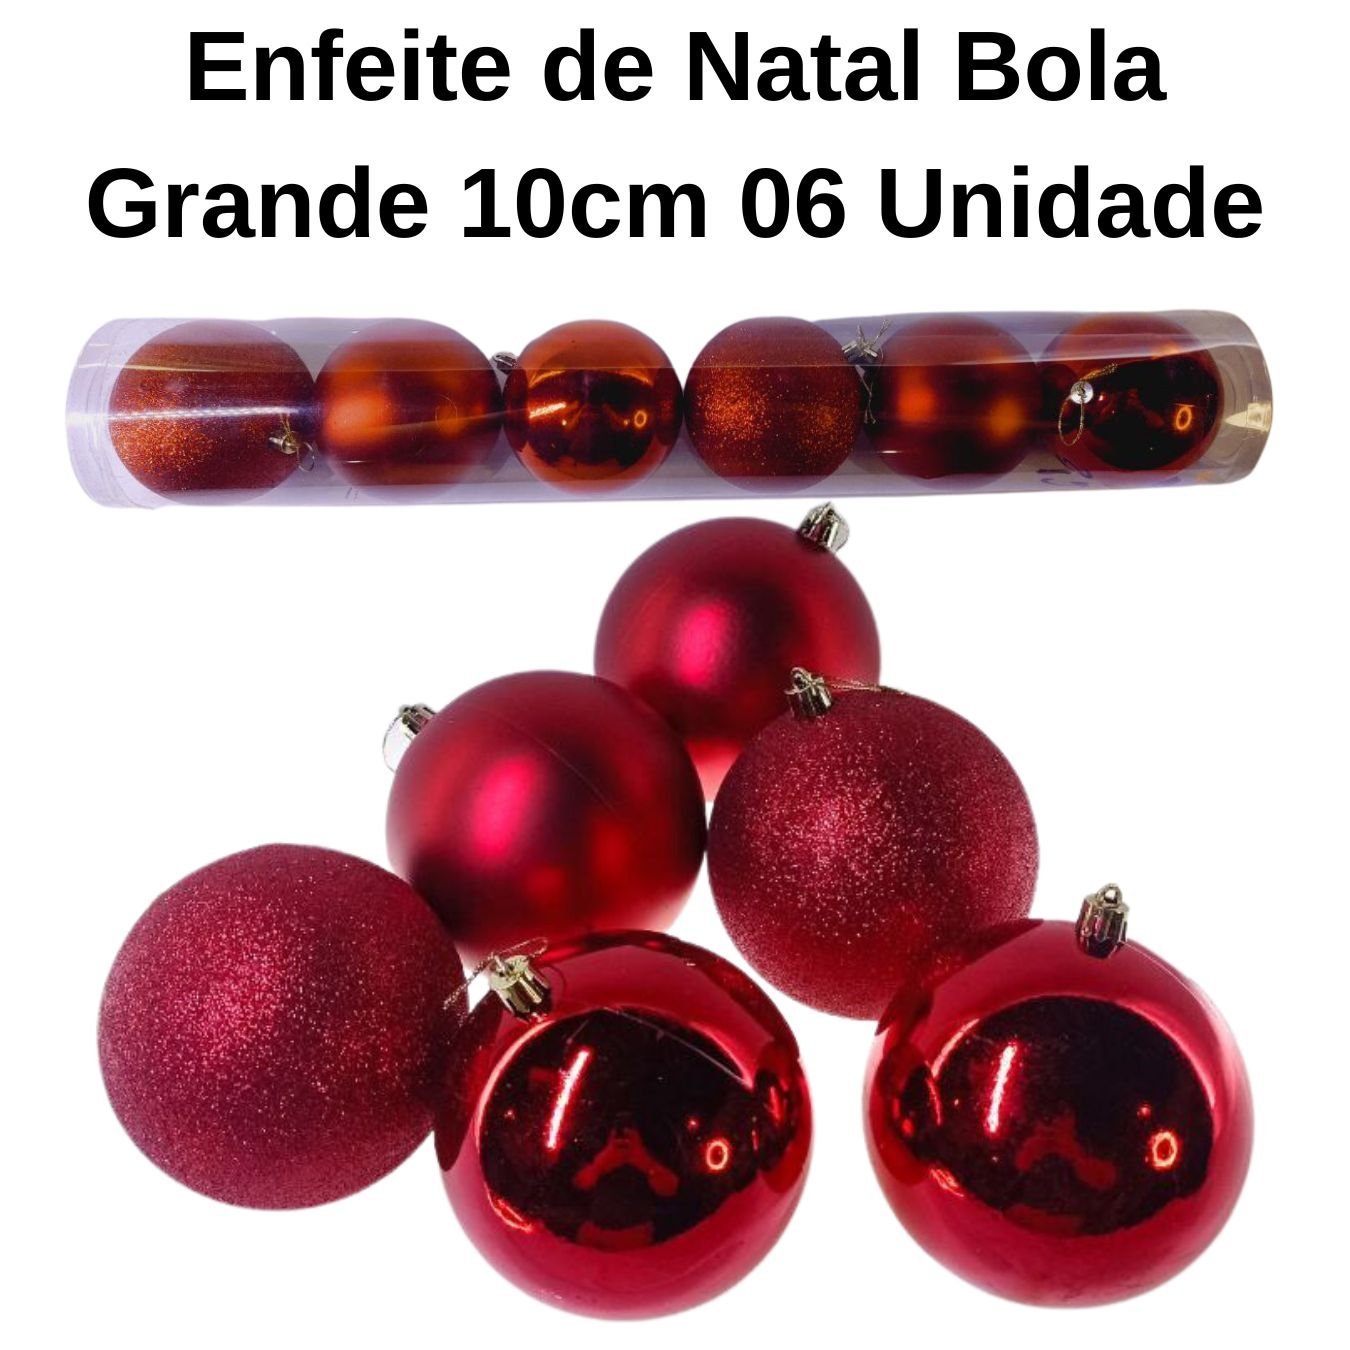 Enfeite de Natal Bola Grande 10cm 06 Unidade Cor:Vermelho - 5